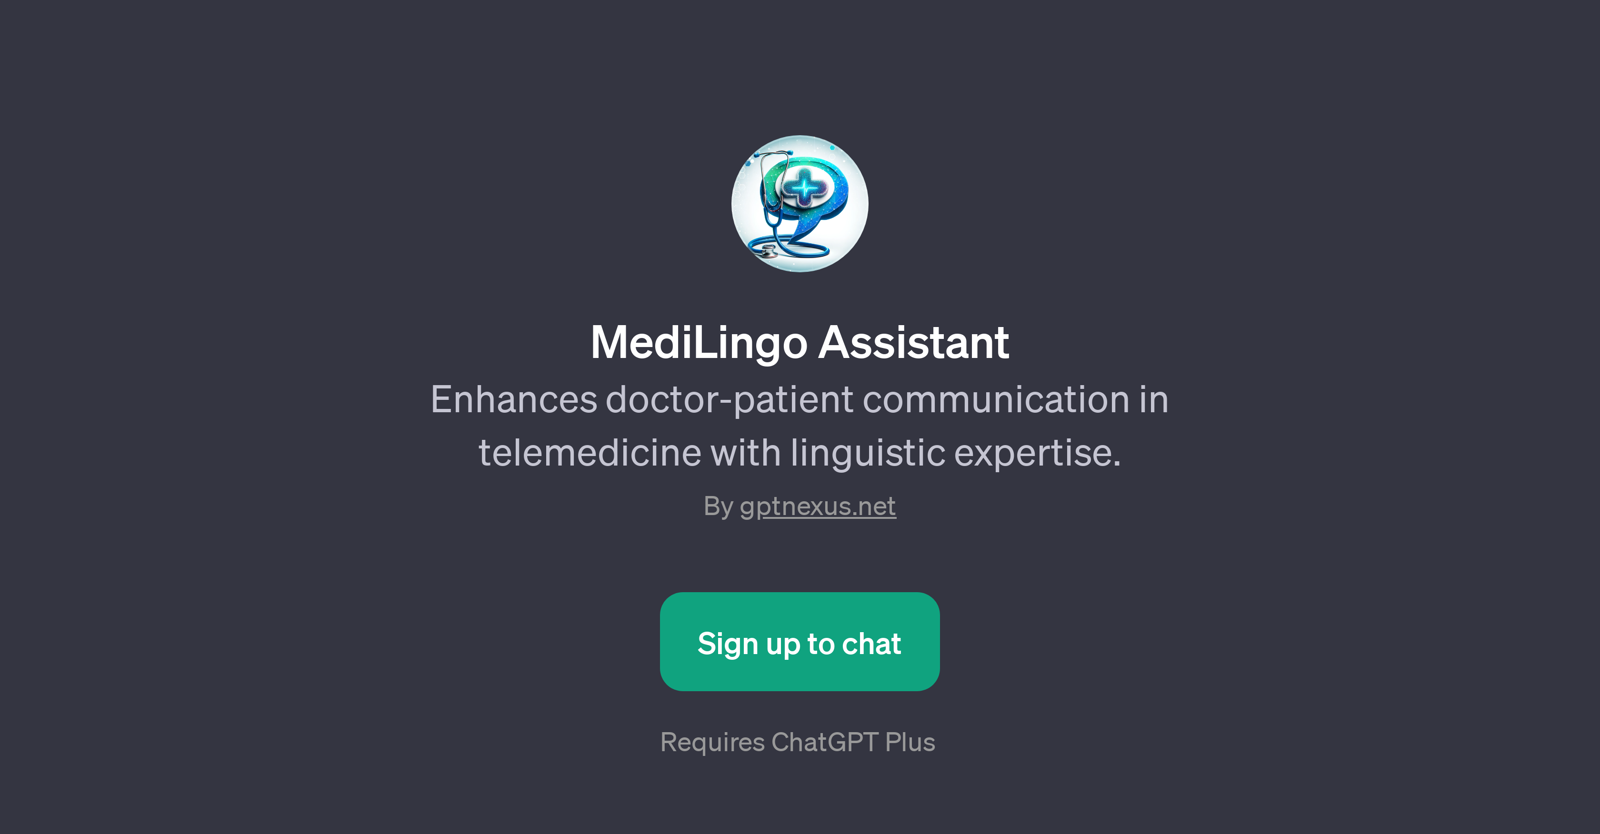 MediLingo Assistant website